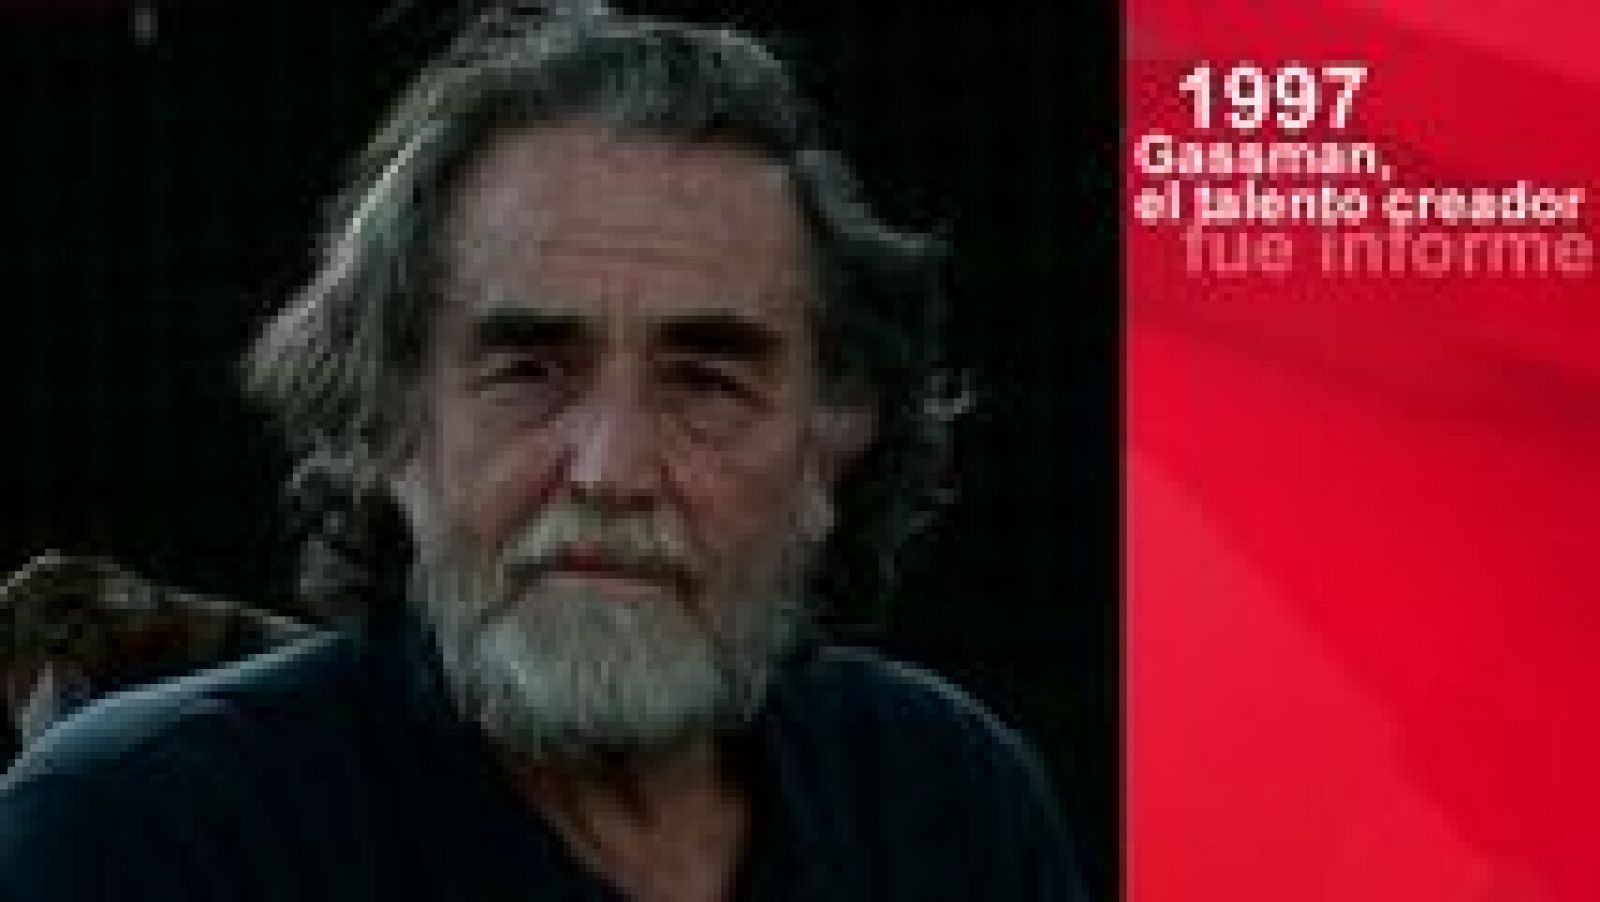 Informe Semanal: Gassman, el talento creador (1997) | RTVE Play